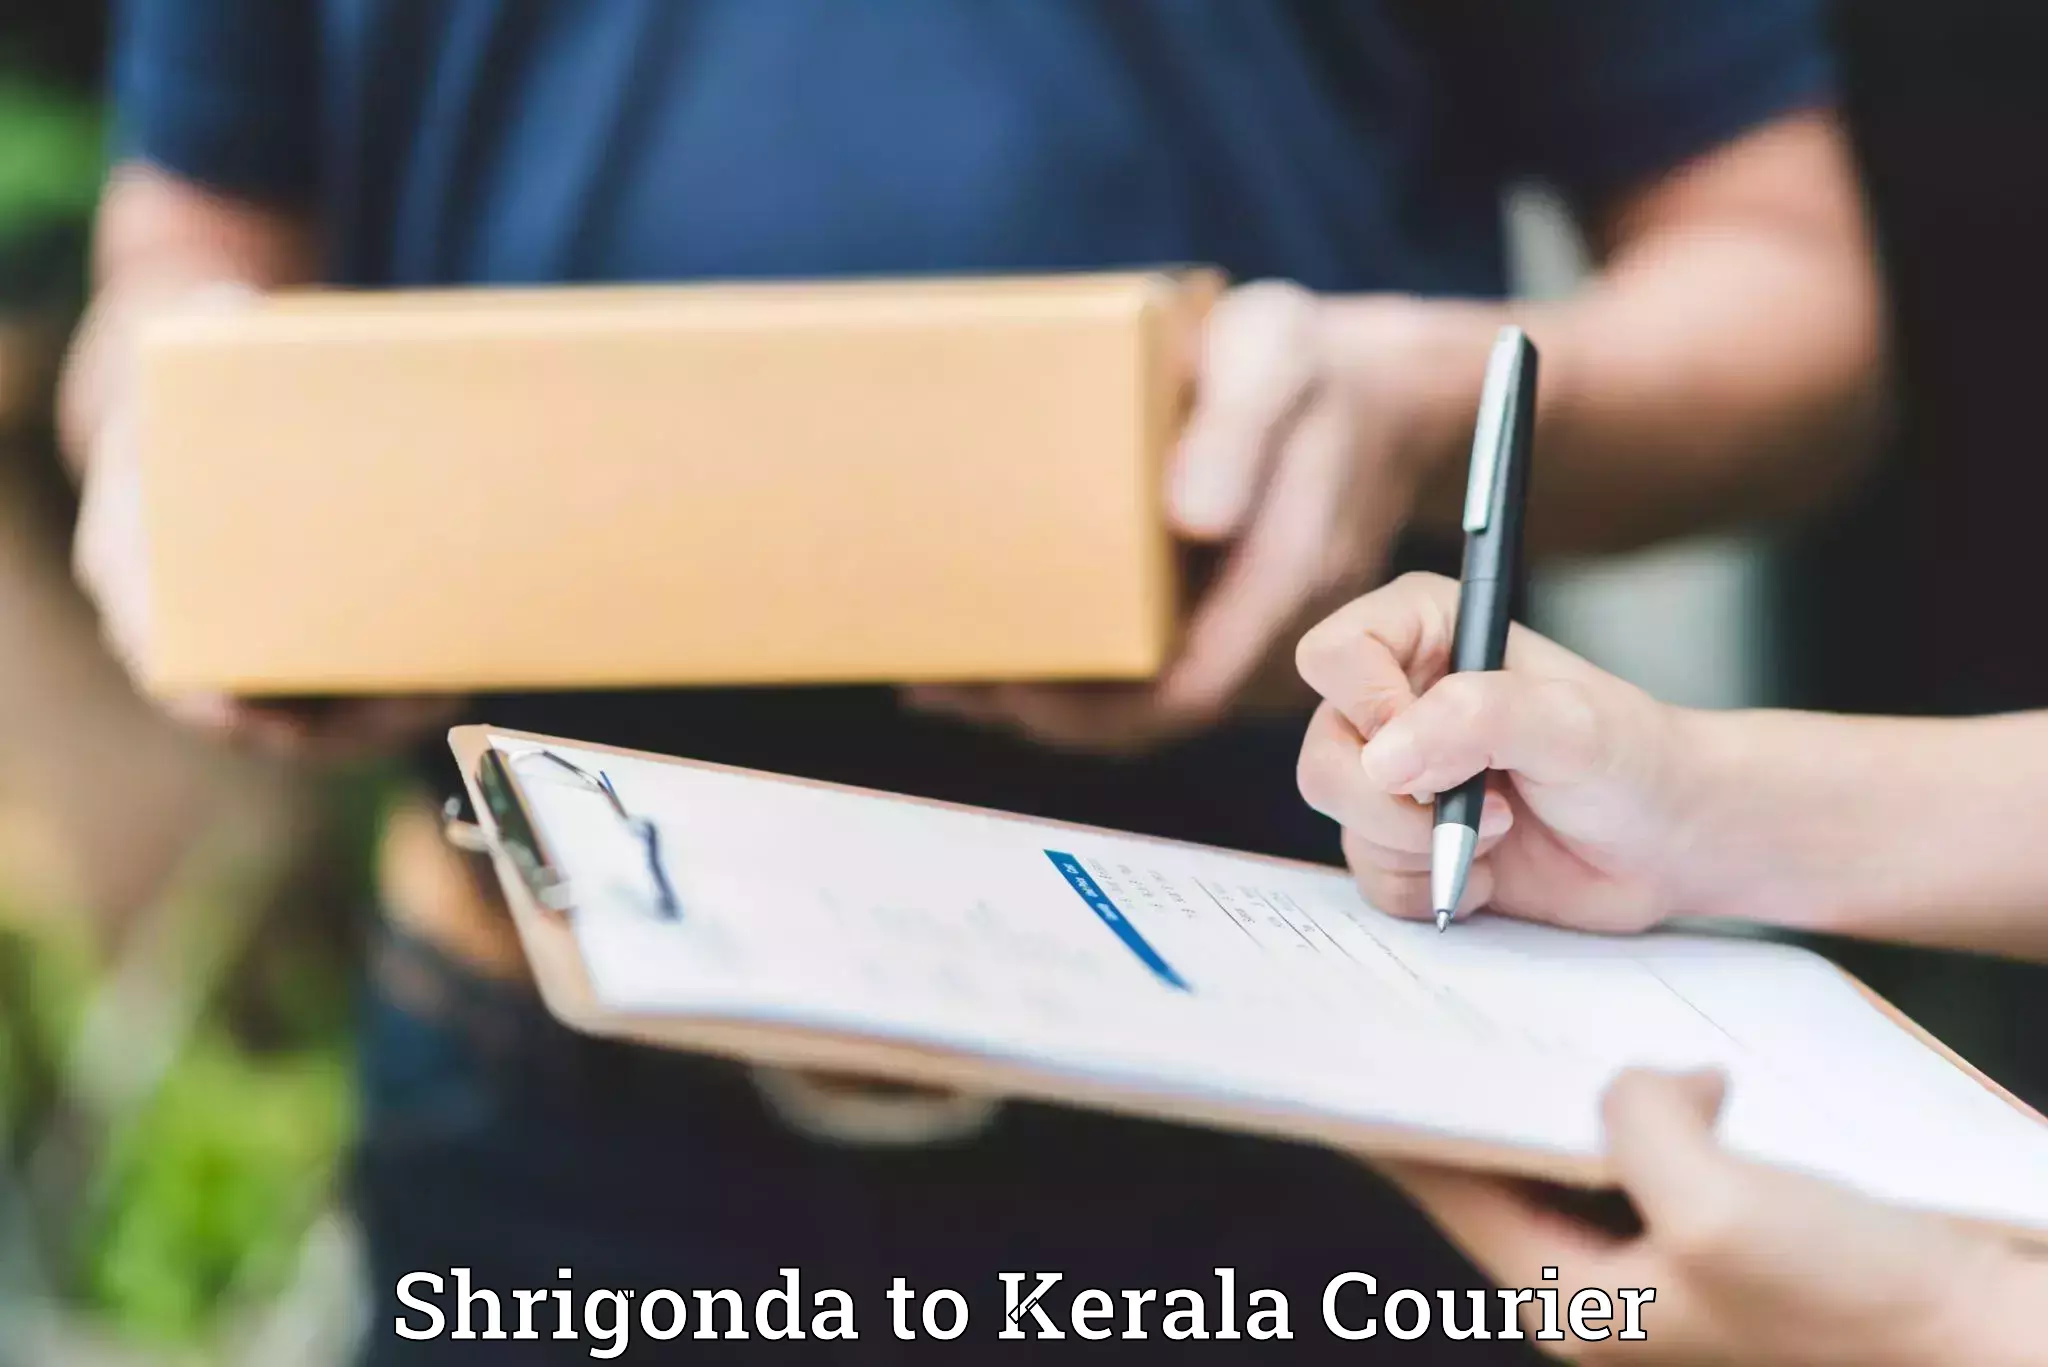 Luggage transport consulting Shrigonda to Kerala